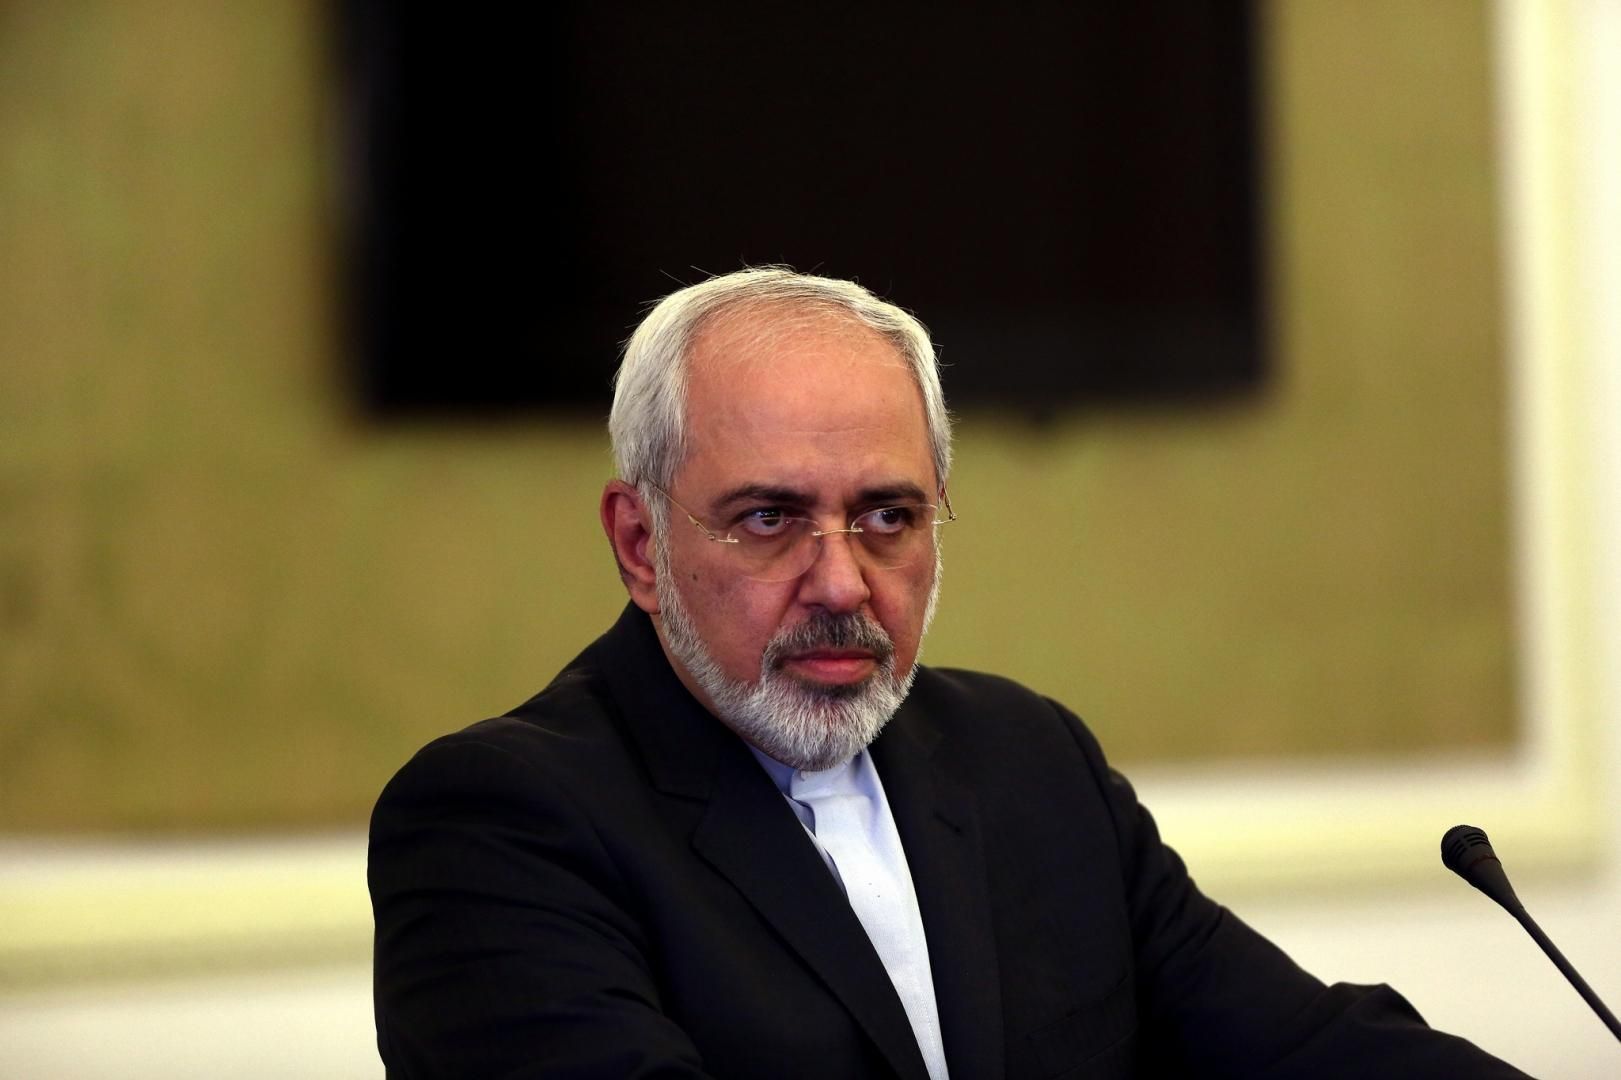 Иран умышленно скрывал причину катастрофы МАУ: новые доказательства